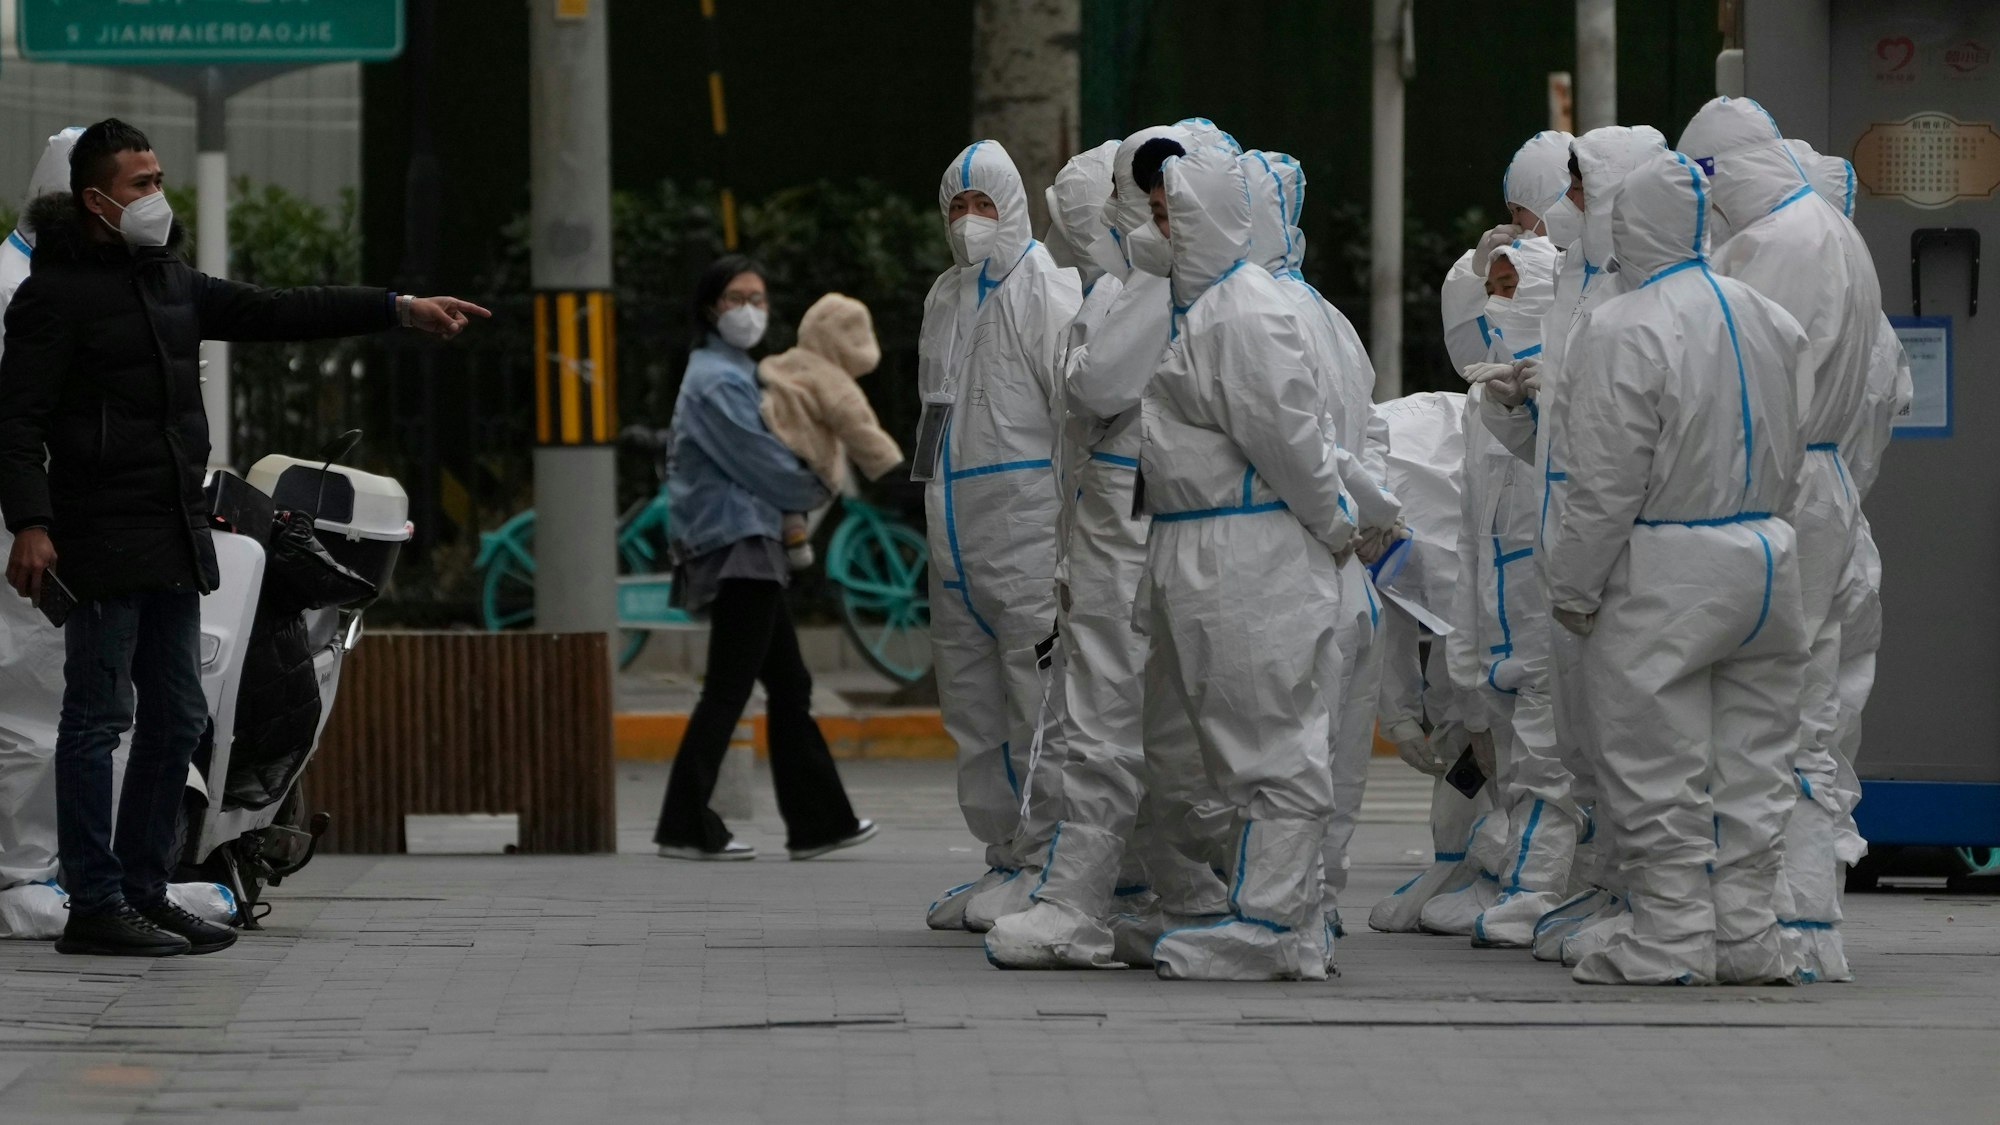 China: Arbeiter in Corona-Schutzkleidung versammeln sich zu ihrem Dienst. Sie stehen als Gruppe auf der rechten Seite des Bildes. Auf der linken Seite steht ein Mann in ziviler Kleidung.